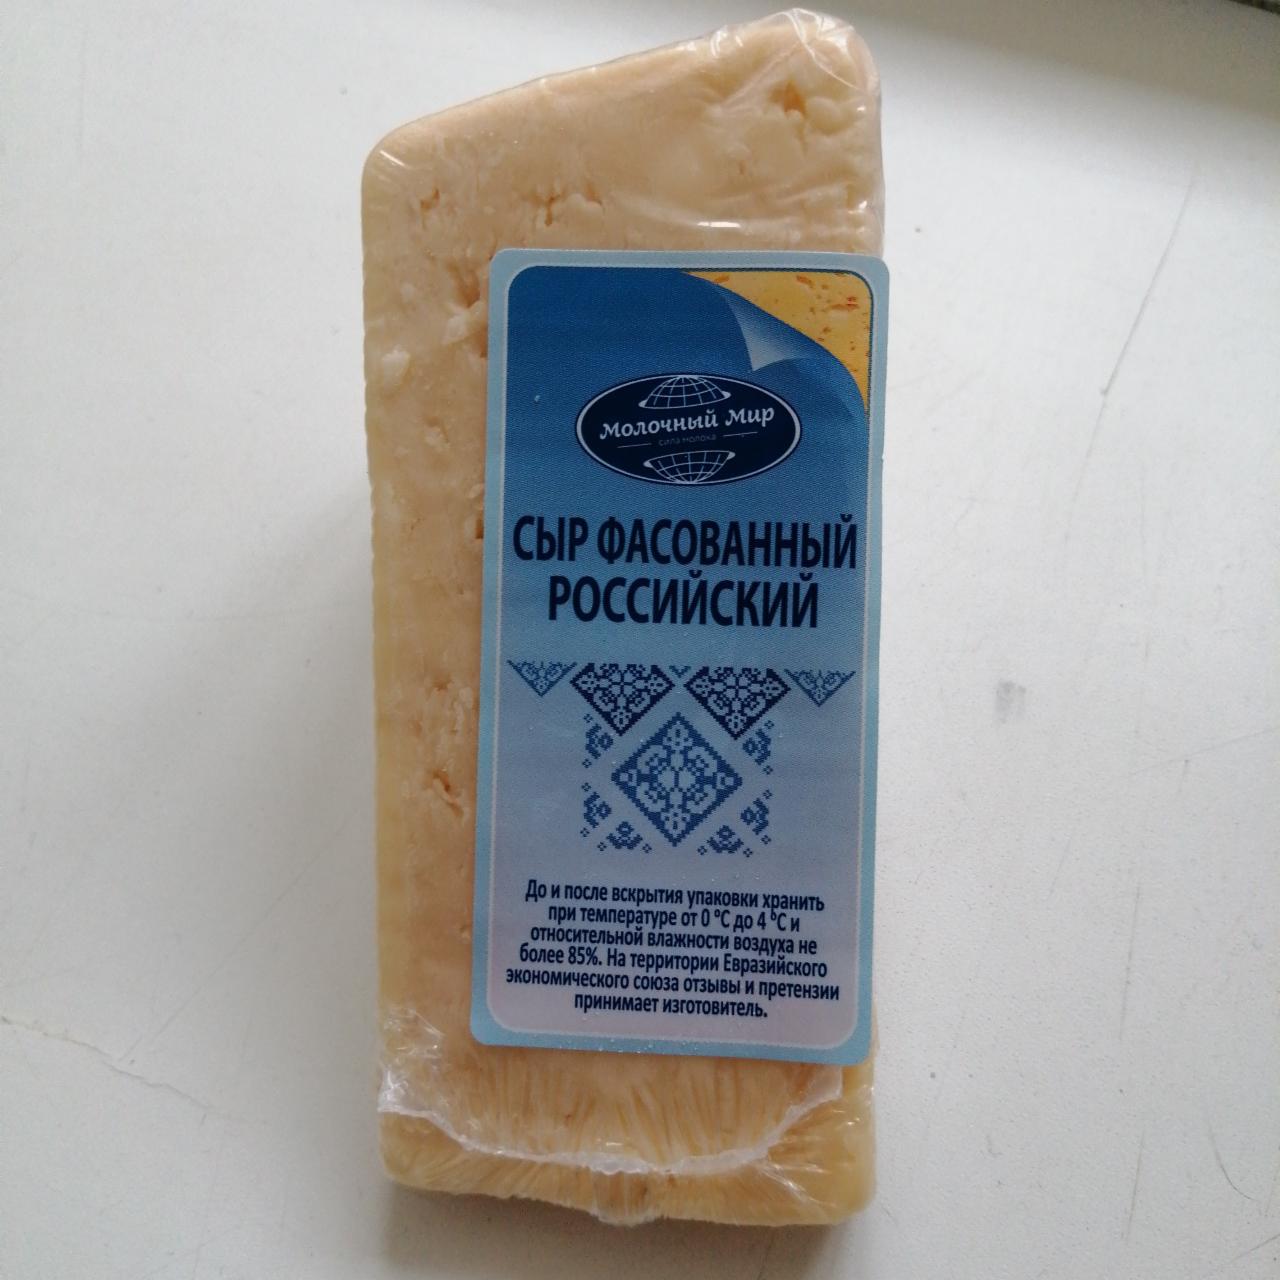 Фото - сыр фасованный российский новый экстра Молочный мир